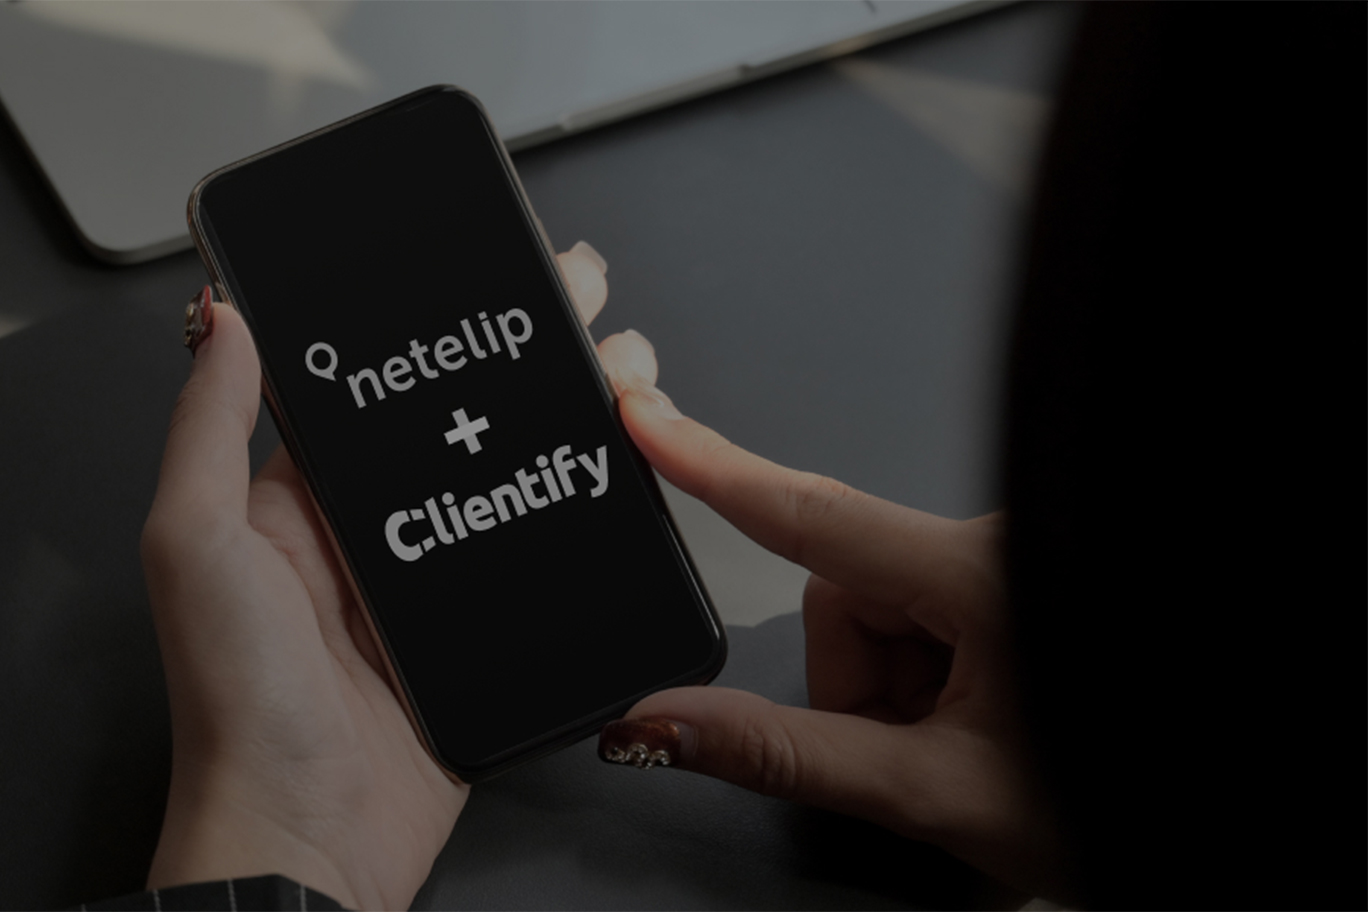 Clientify se integra perfectamente con netelip